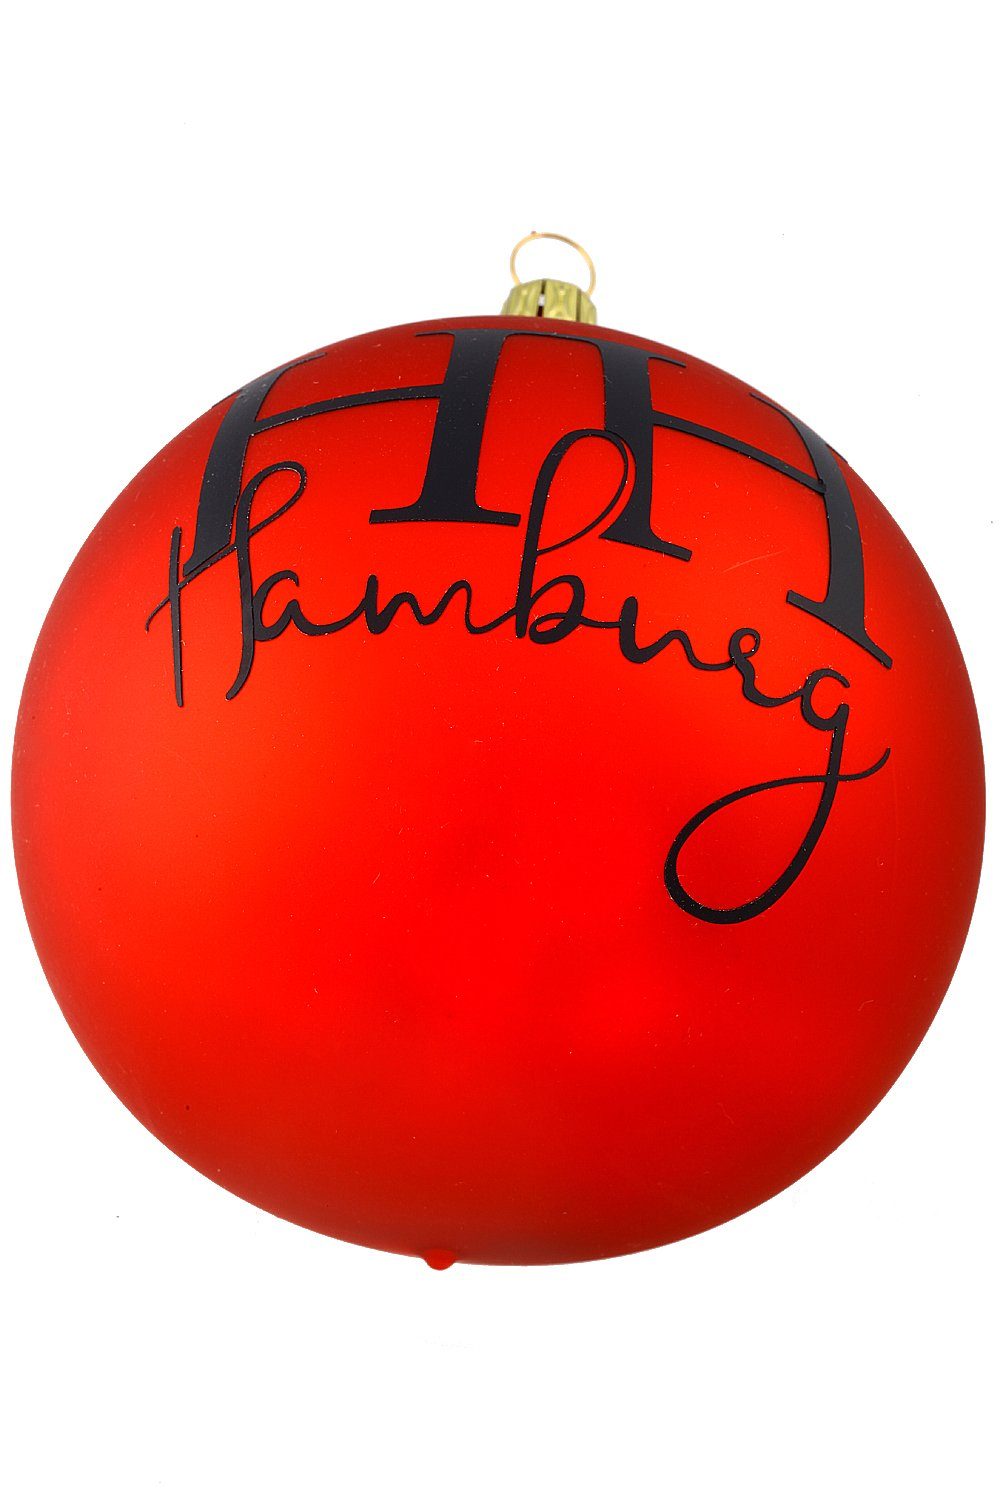 - Hamburger handdekoriert Weihnachtskontor Dekohänger - mundgeblasen Hamburg, - Weihnachtsbaumkugel Kugel Rote